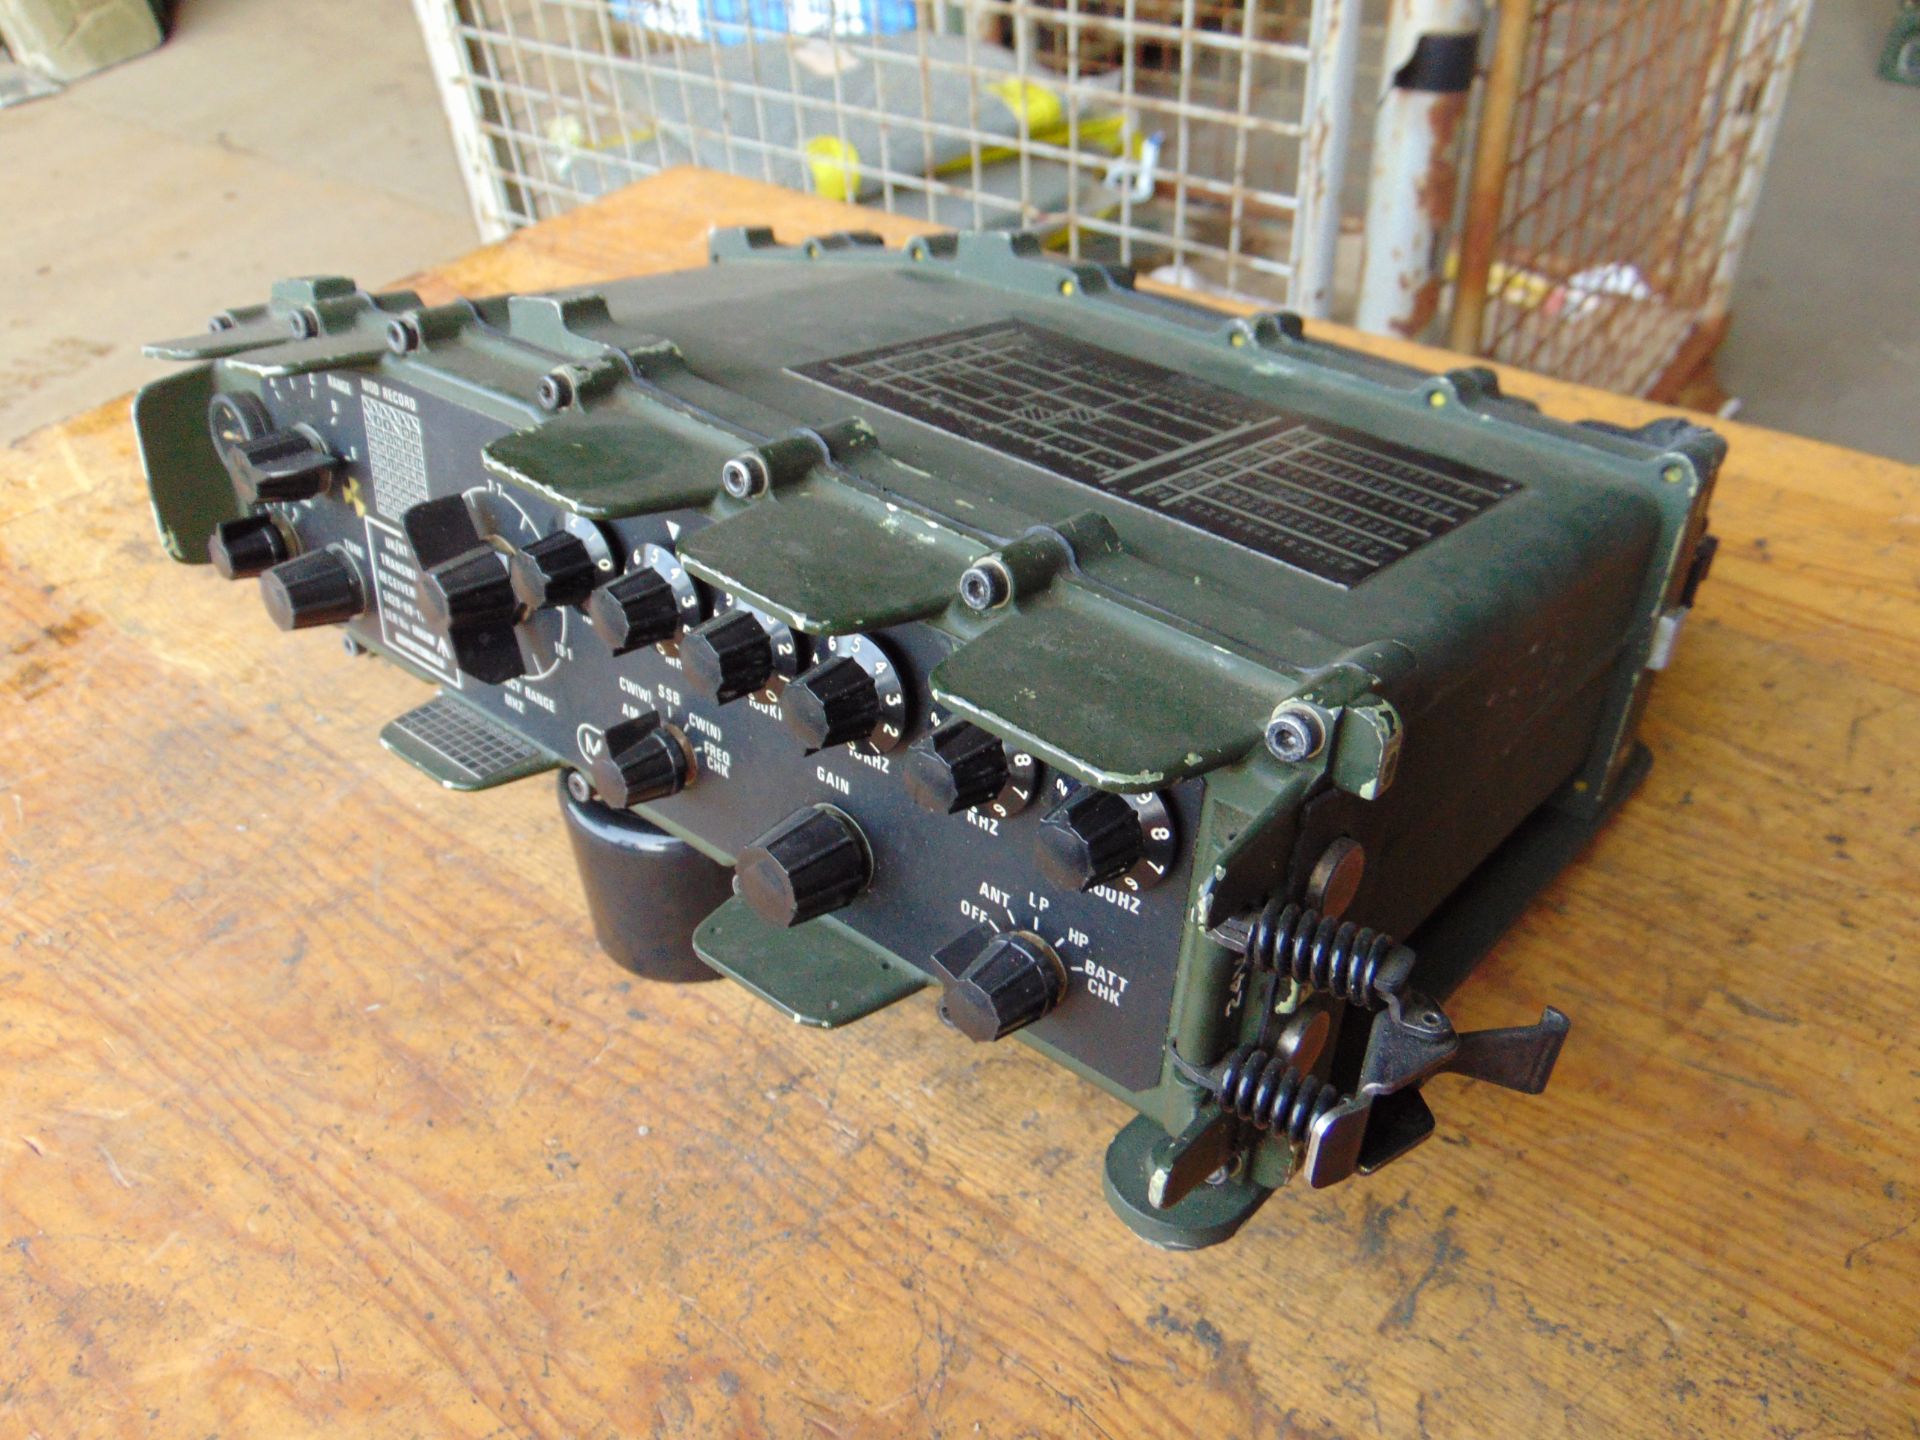 Clansman UK RT 320 HF Transmitter Receiver. - Image 4 of 4